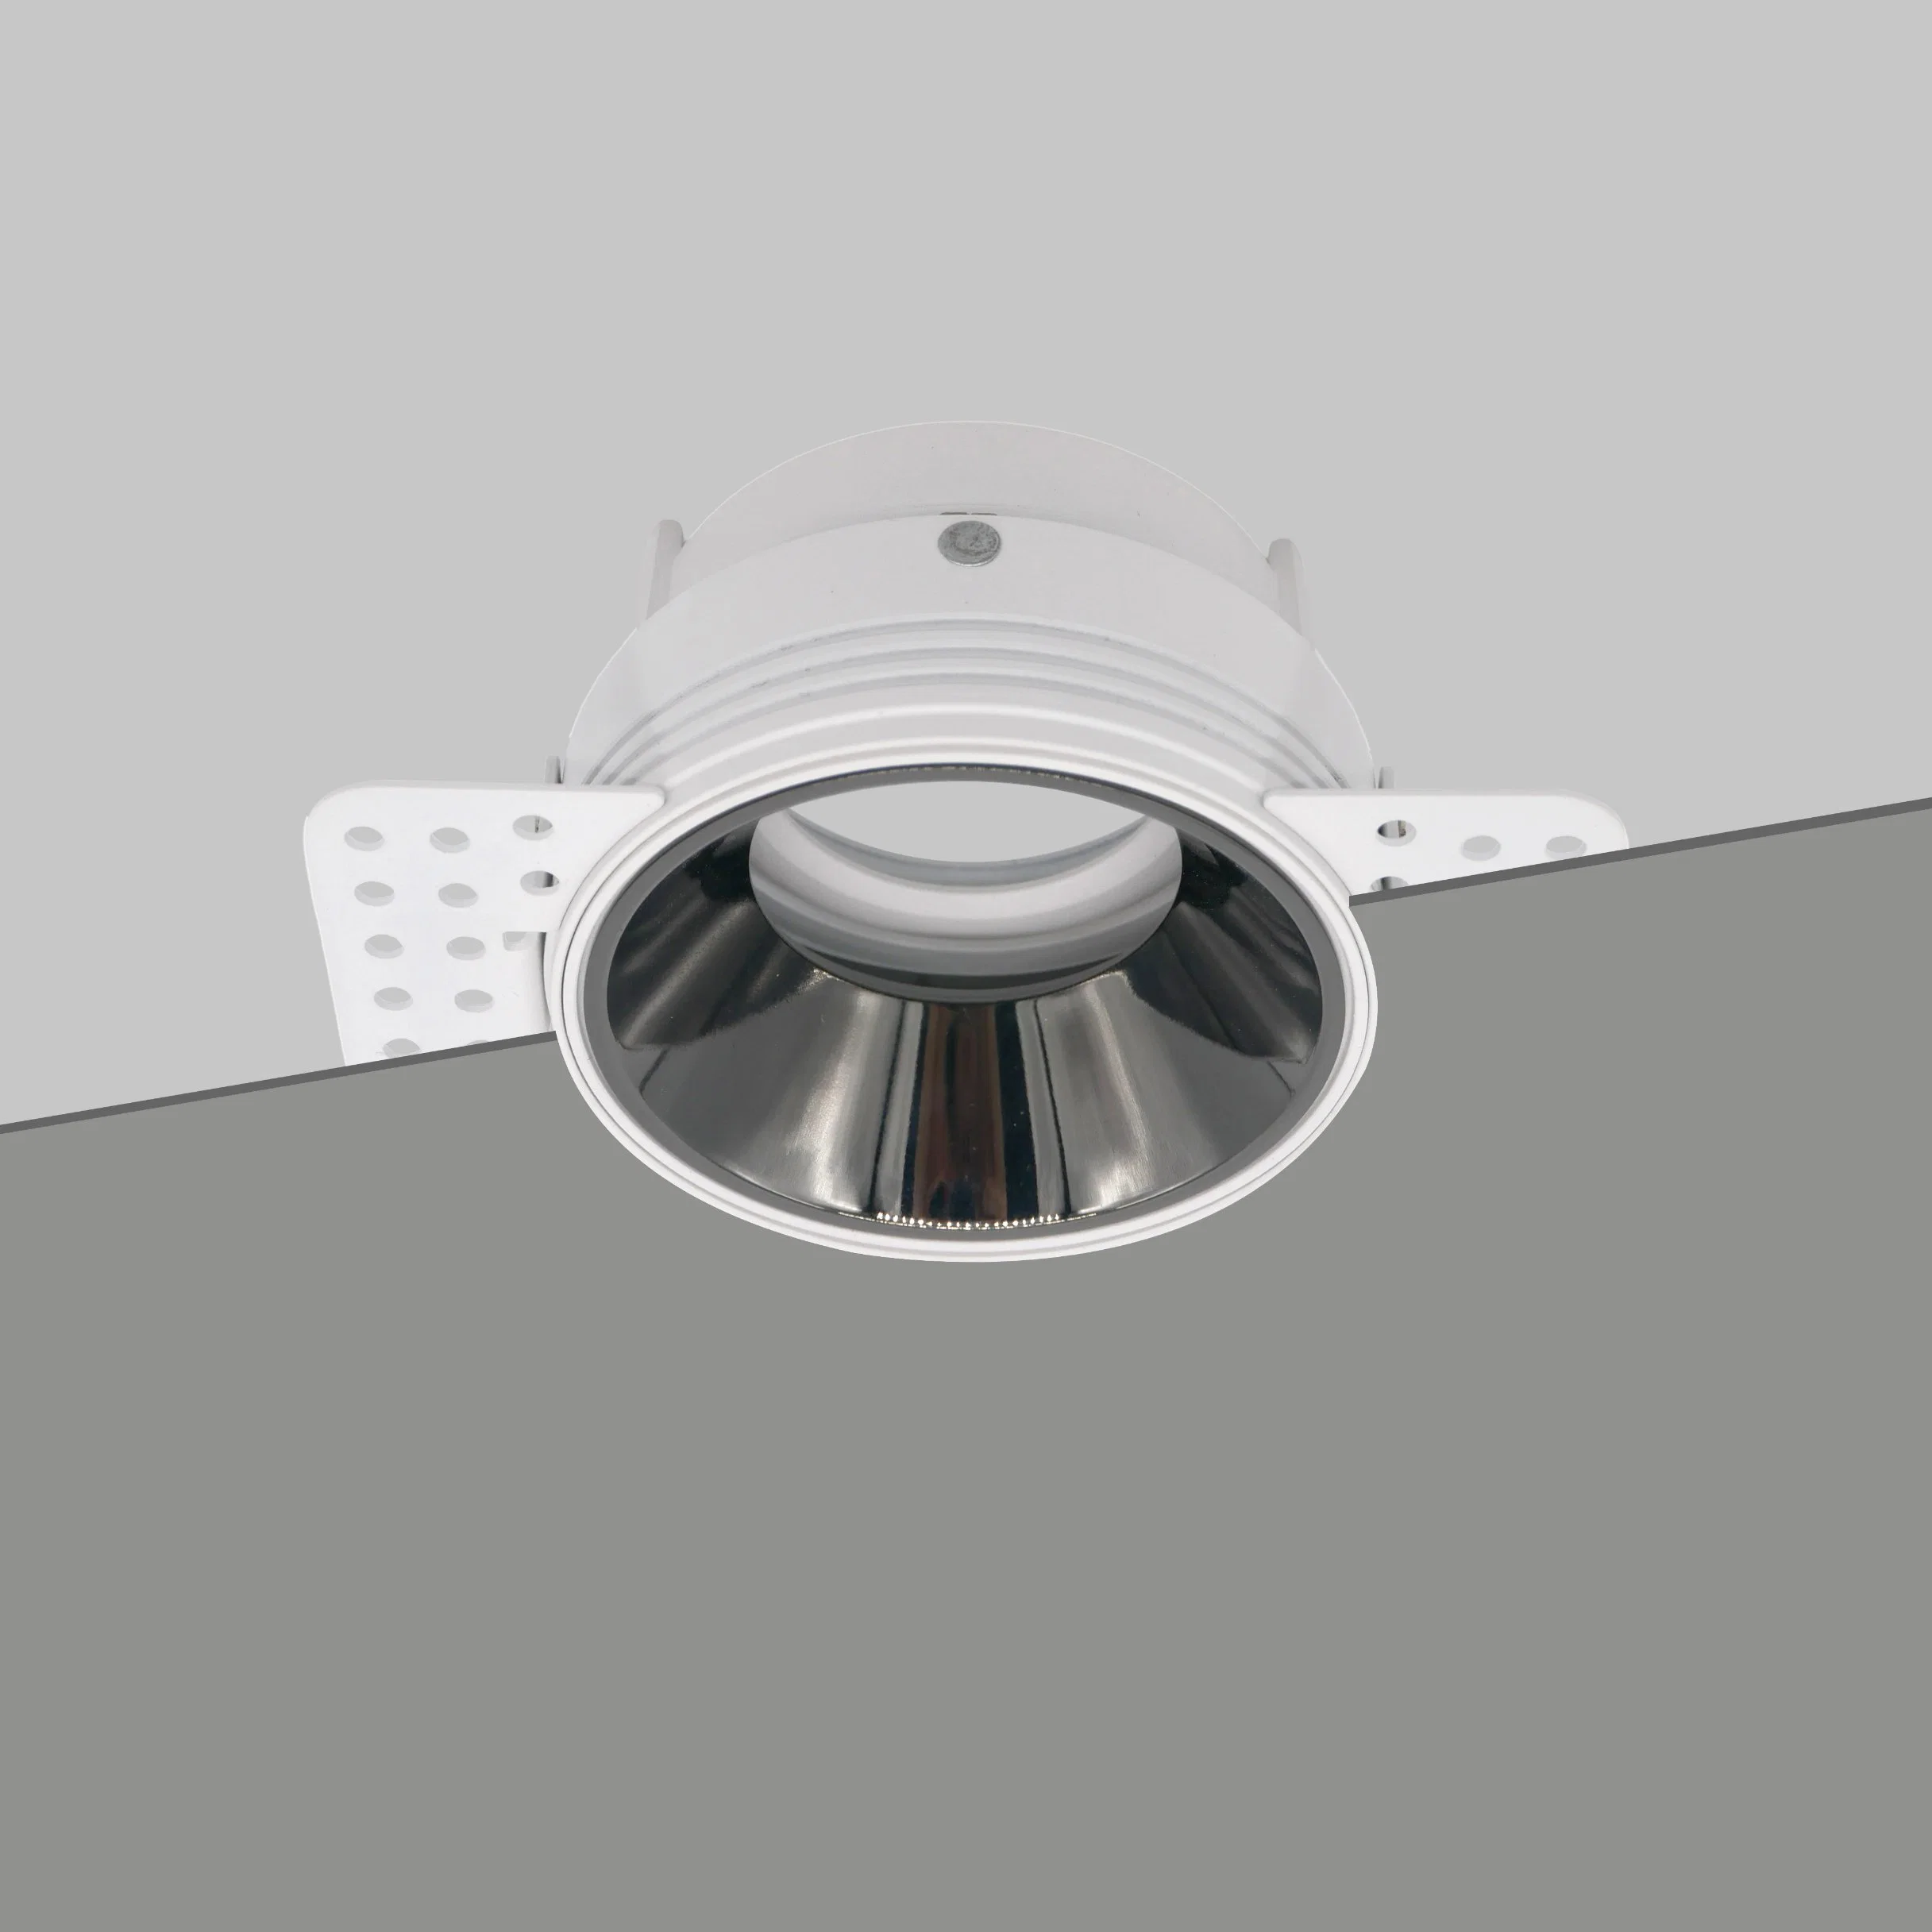 Aluminio MR16 GU10 LED Halógeno Empotrable Sin Borde Luz Empotrada Ajustable Focos